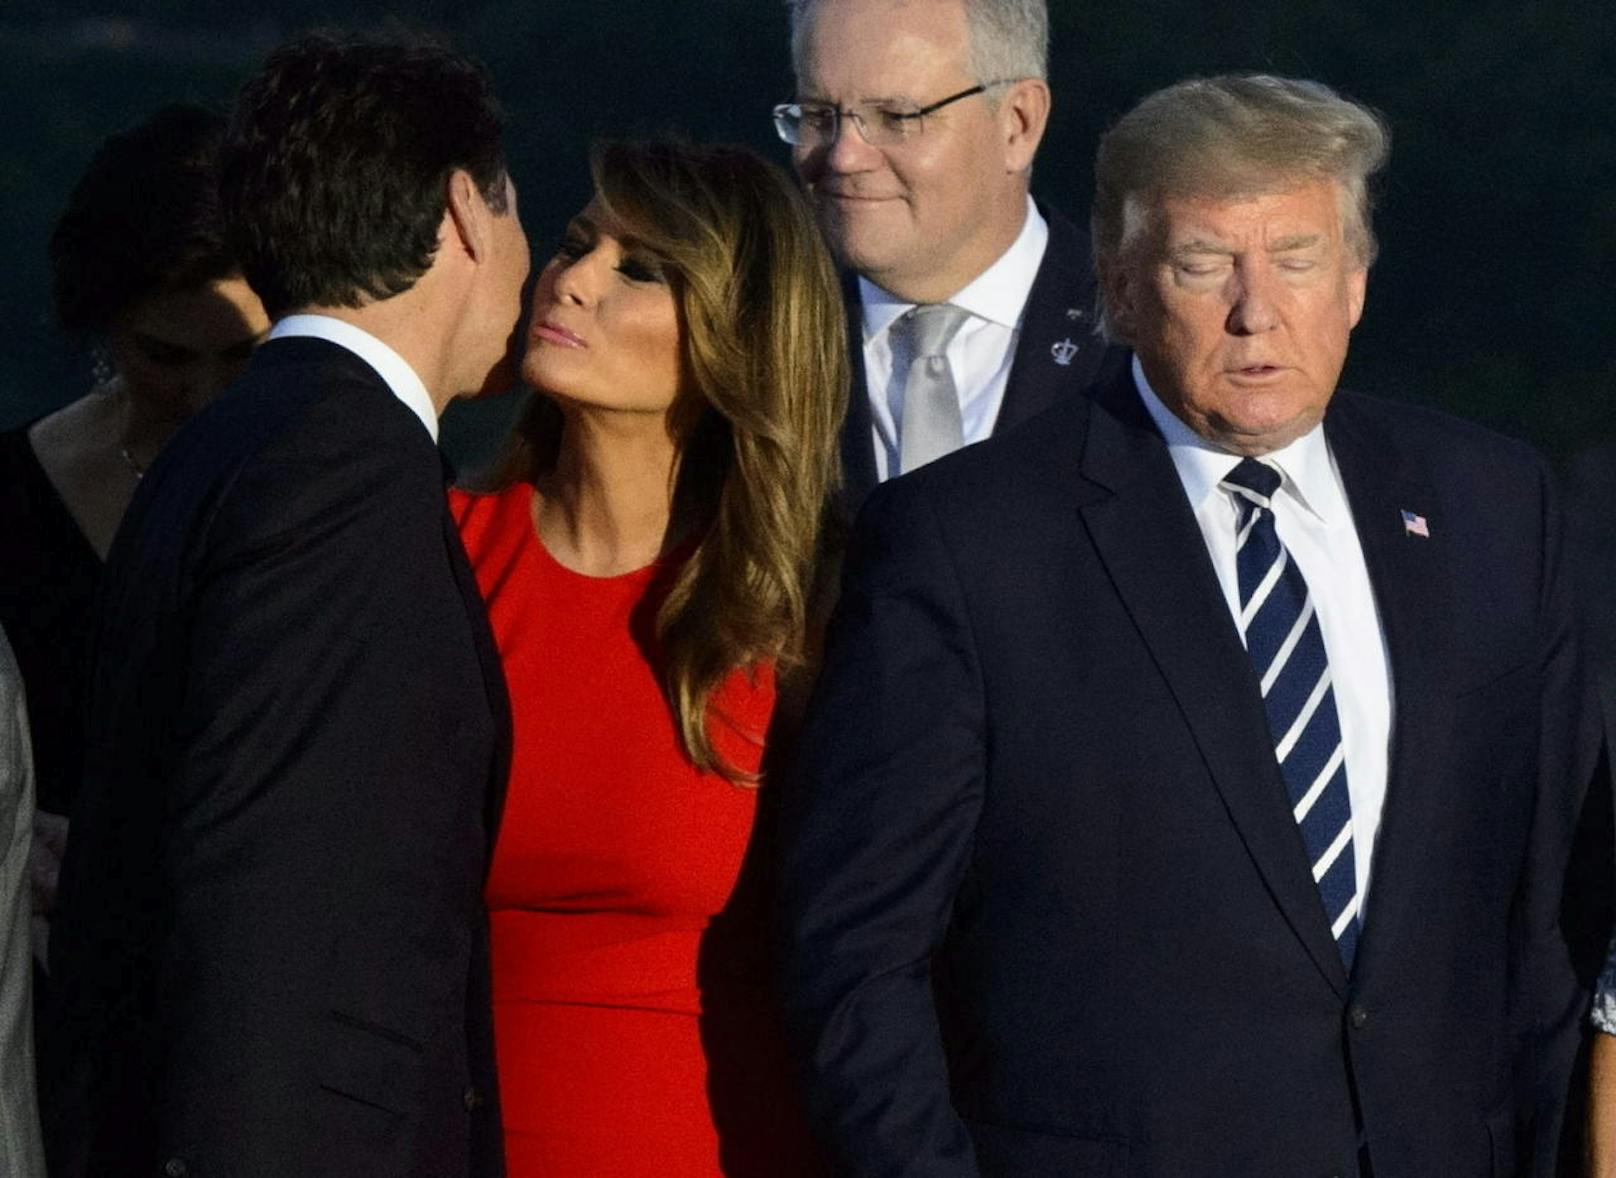 Dieses innige Begrüßungsbussi zwischen Kanadas Premierminister Justin Trudeau (l.) und US-First Lady Melania Trump beflügelt die Fantasie der Online-Nutzer. US-Präsident Donald Trump hält Melania in eisernem Griff.